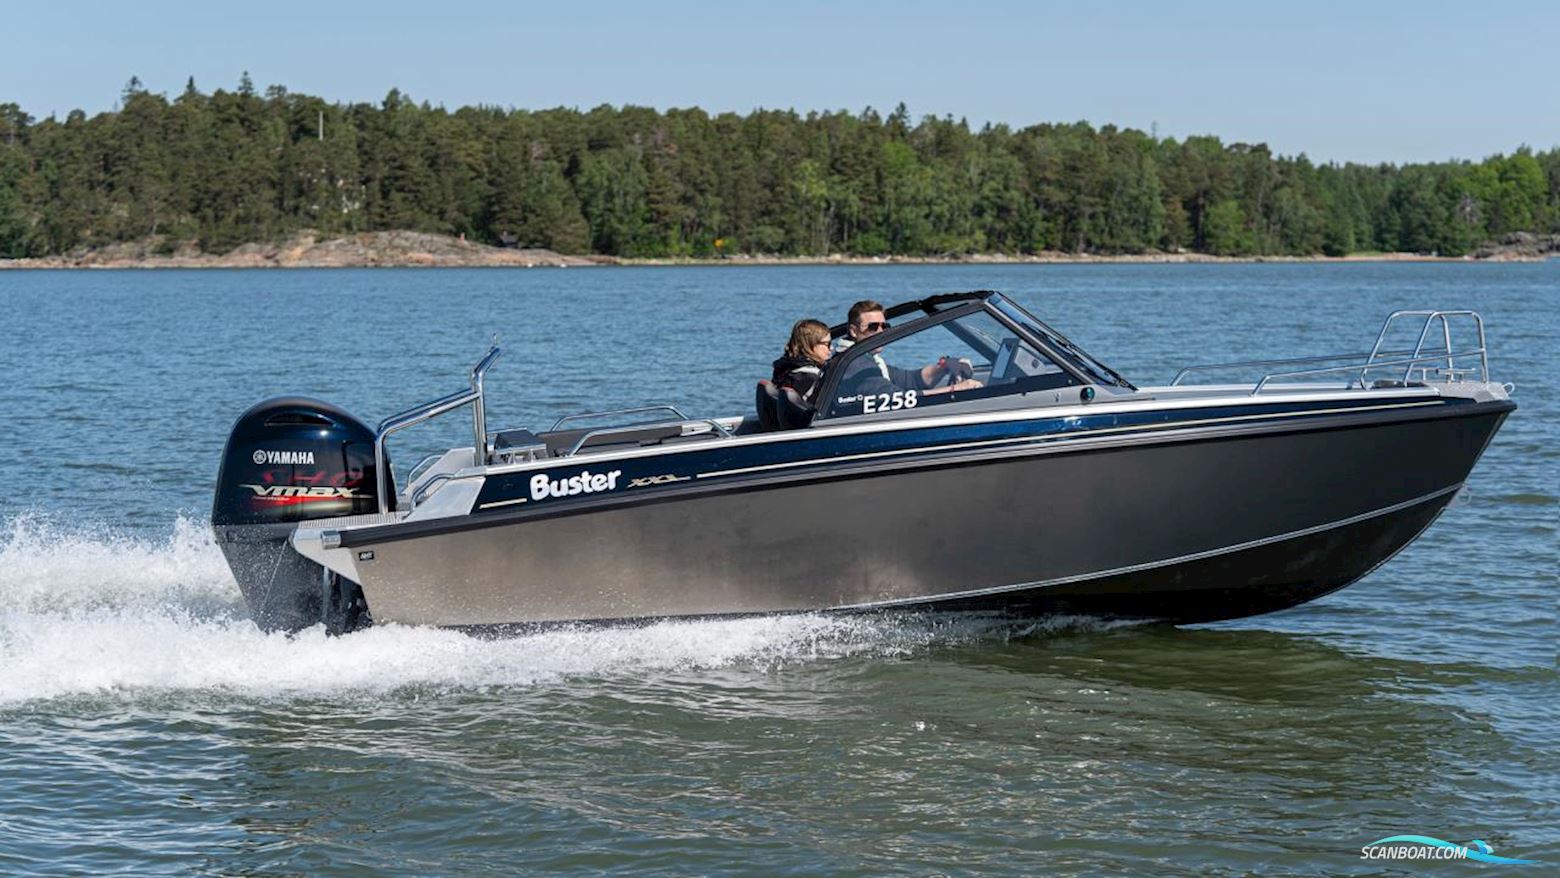 Buster Xxl V Max Edition Motorbåt 2023, med Yamaha motor, Sverige